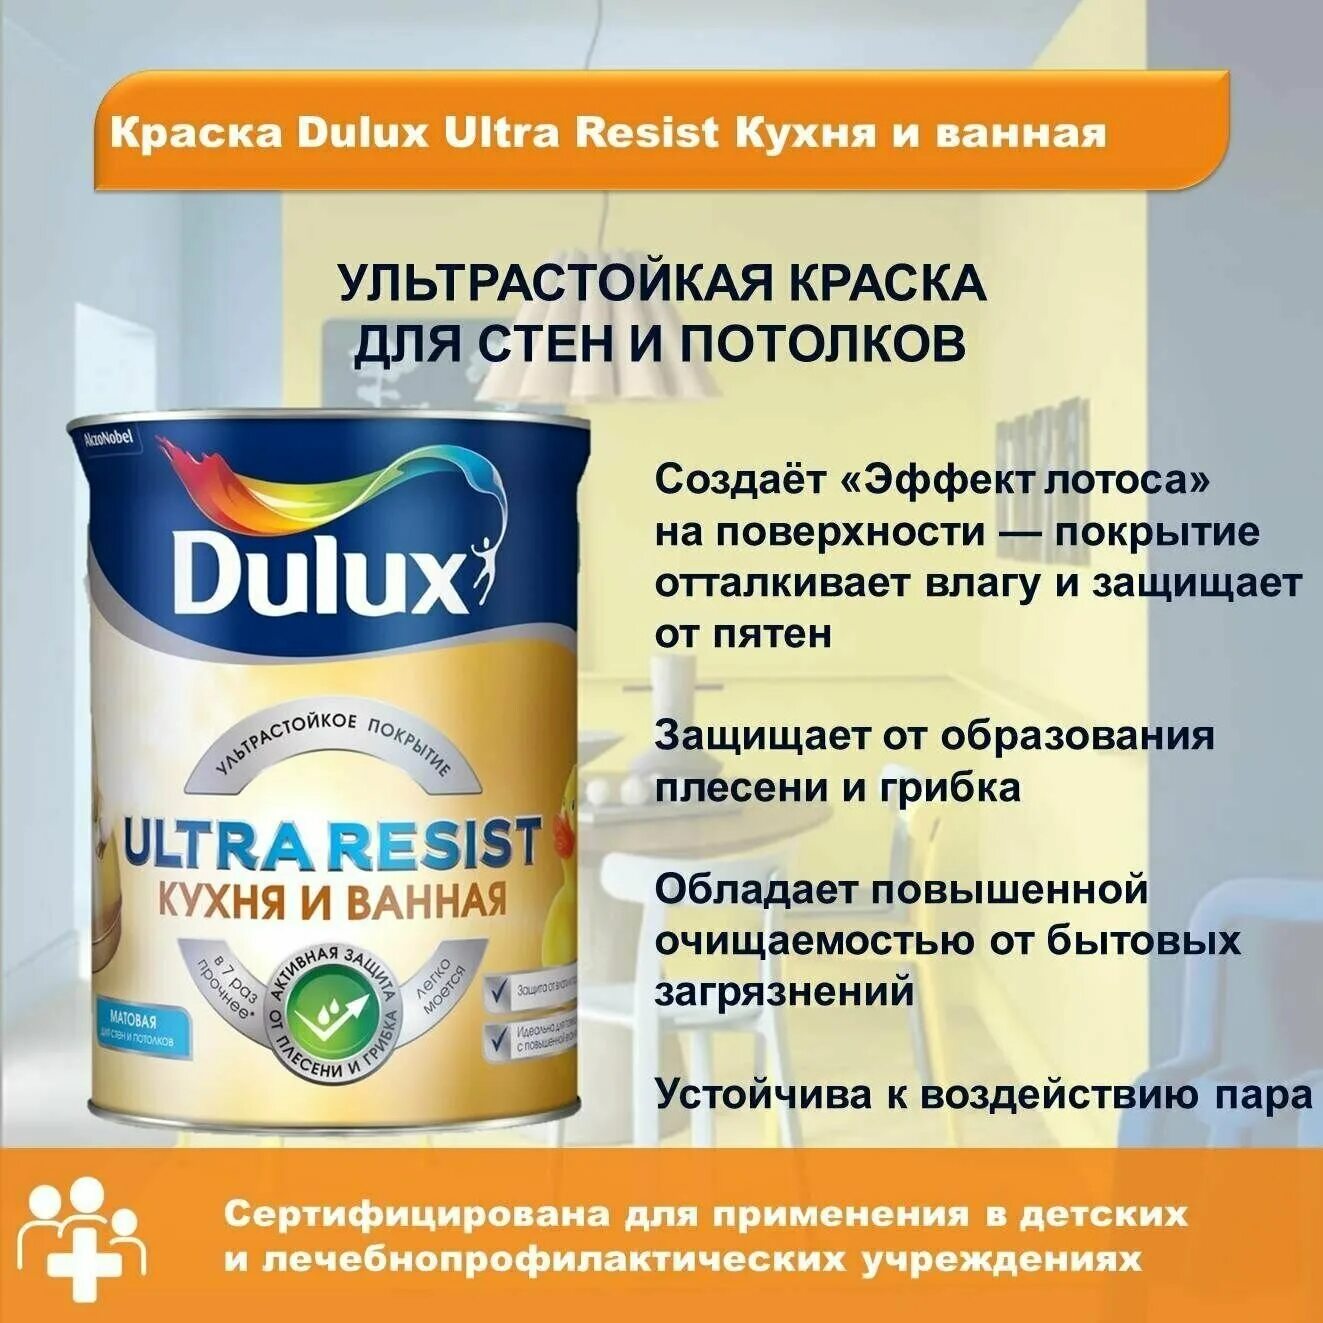 Ультра резист. Краска Делюкс ультра резист. Dulux Ultra resist ванная. Dulux Ultra resist кухня и ванная. Дулюкс Гармония краска.